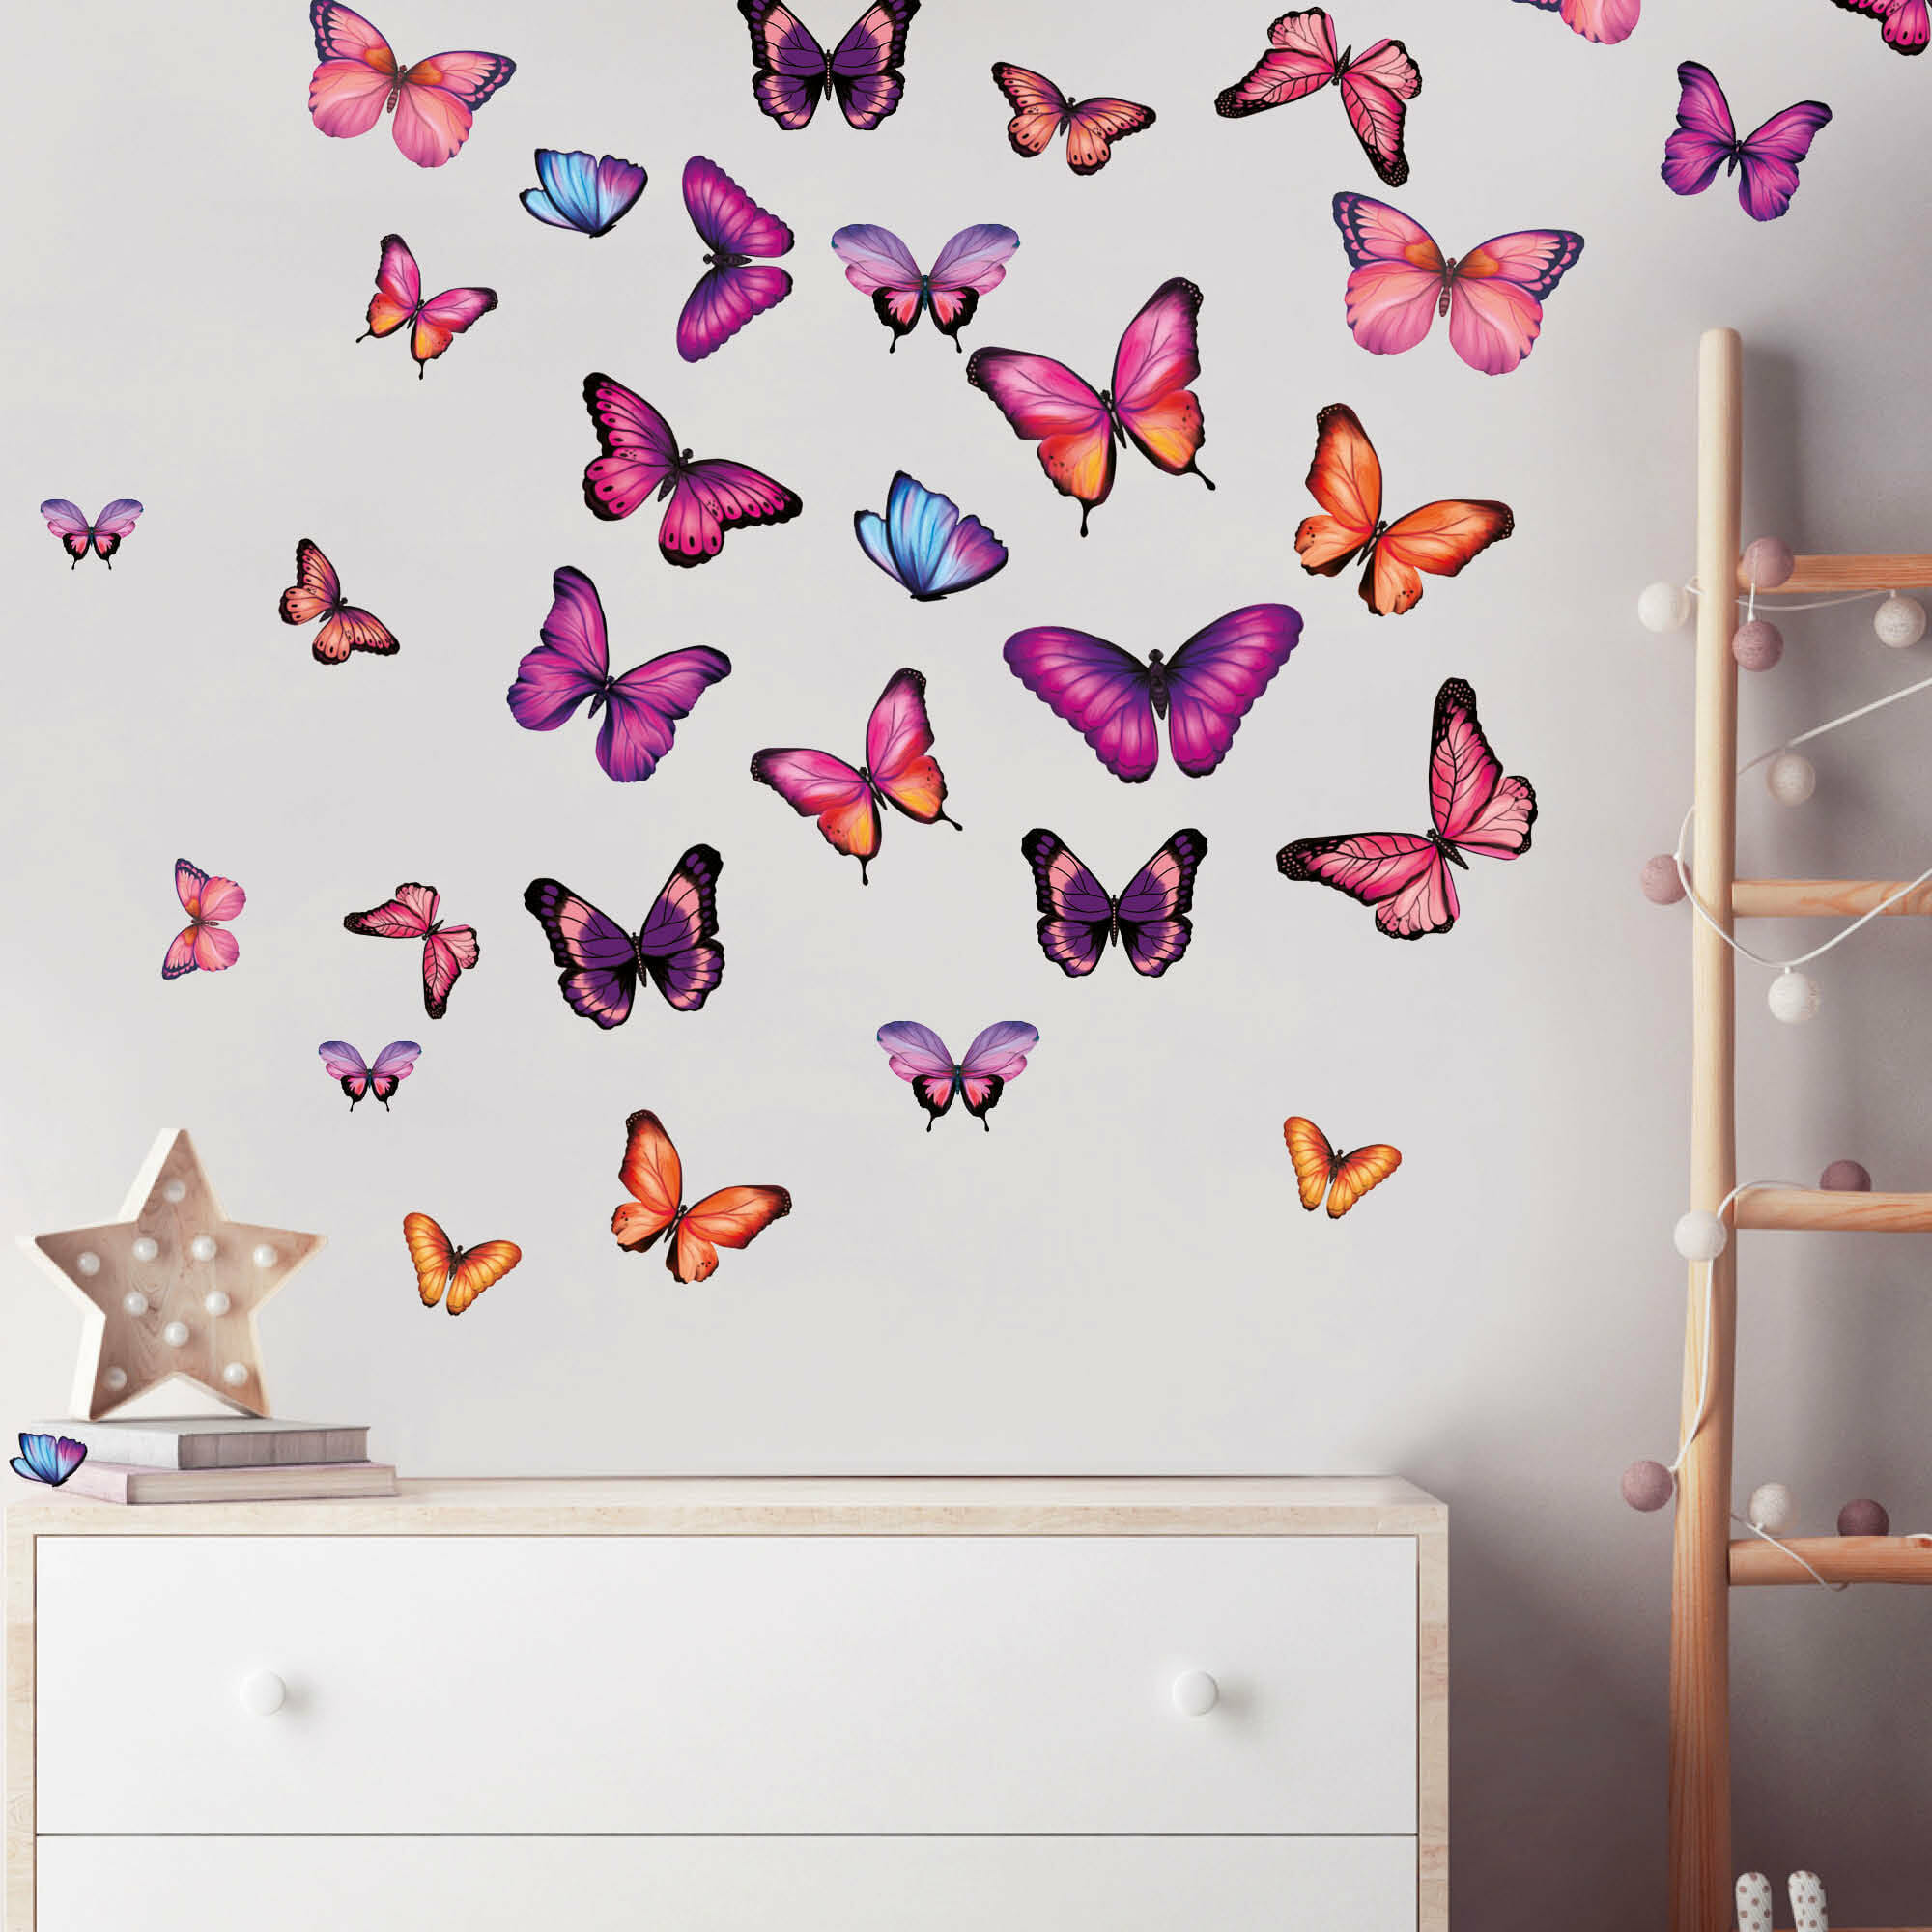 Wandtattoo Kinderzimmer Schmetterlinge in unterschiedlichen Rosa Tönen, Kinderzimmerdeko, Babyzimmer